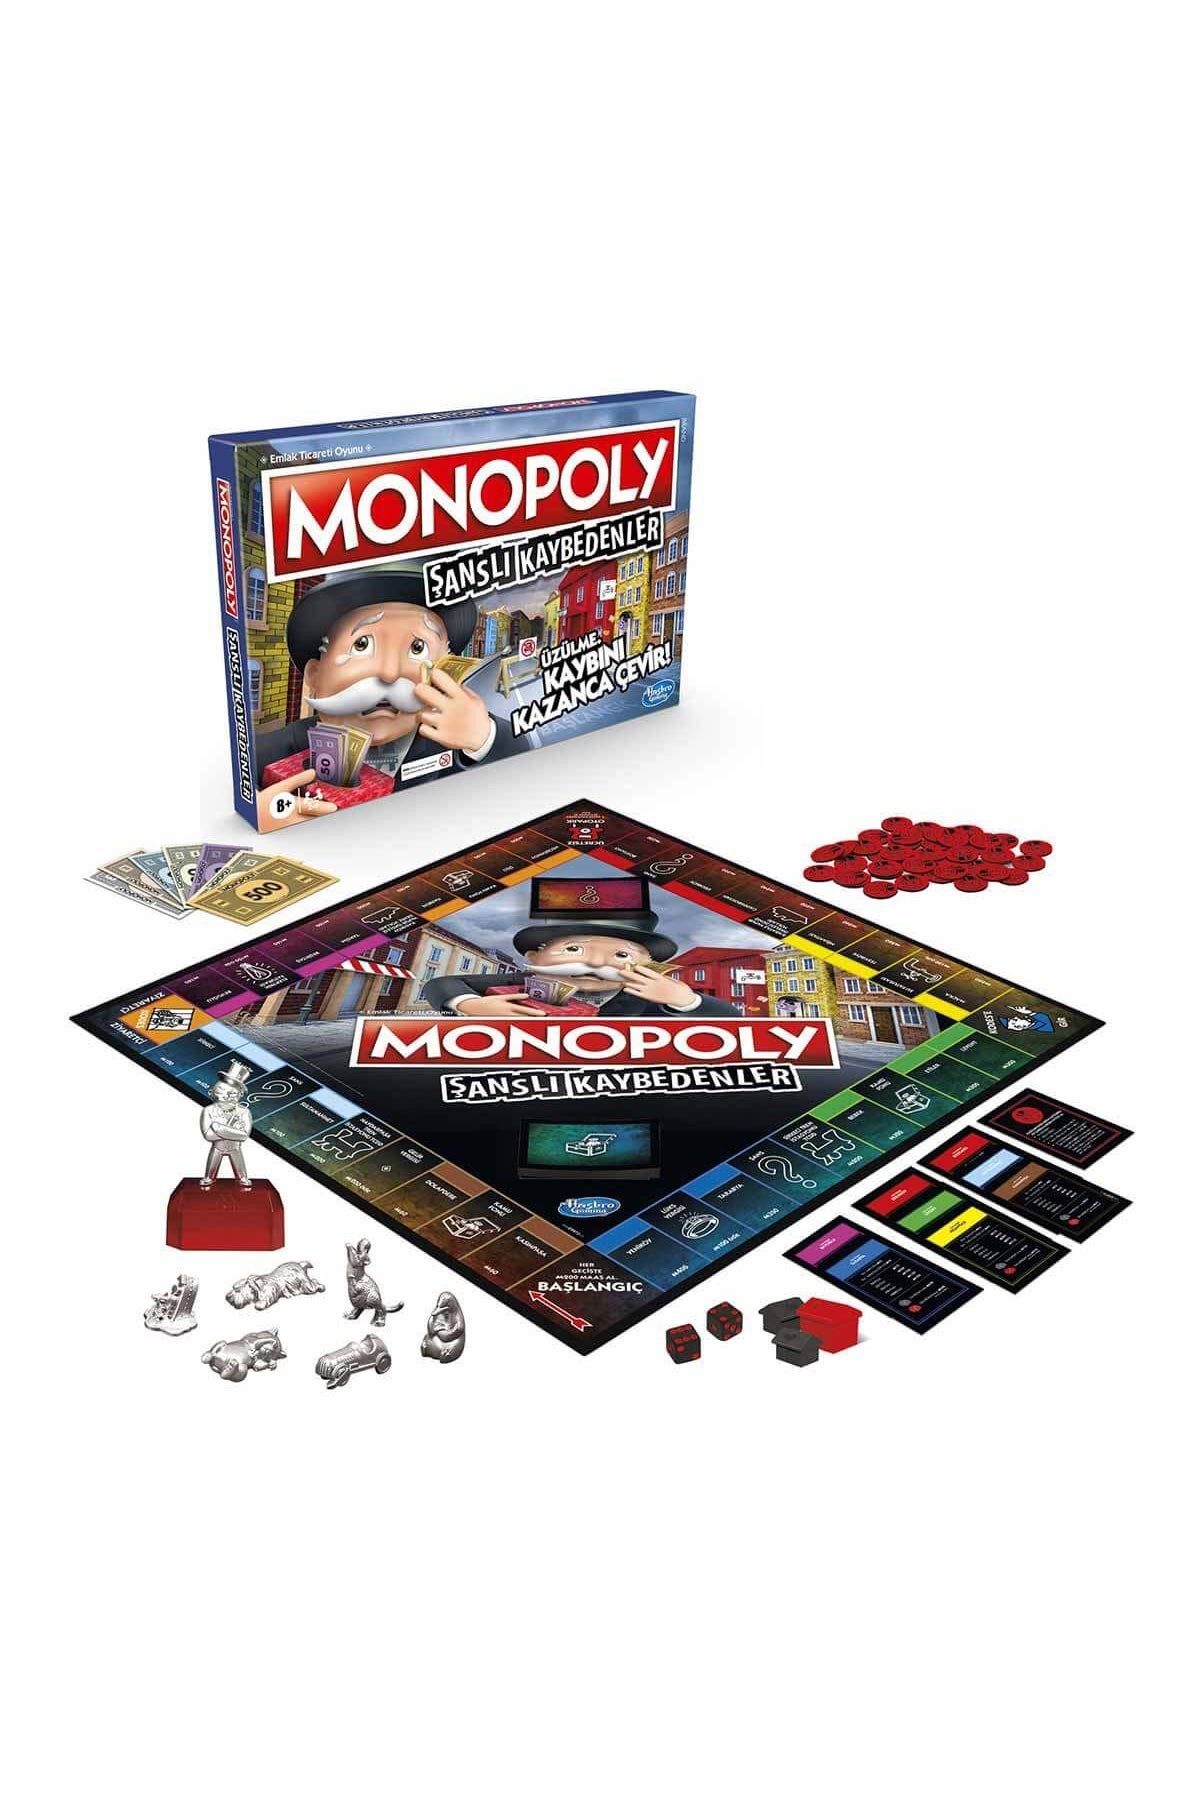 Monopoly Şanslı Kaybedenler